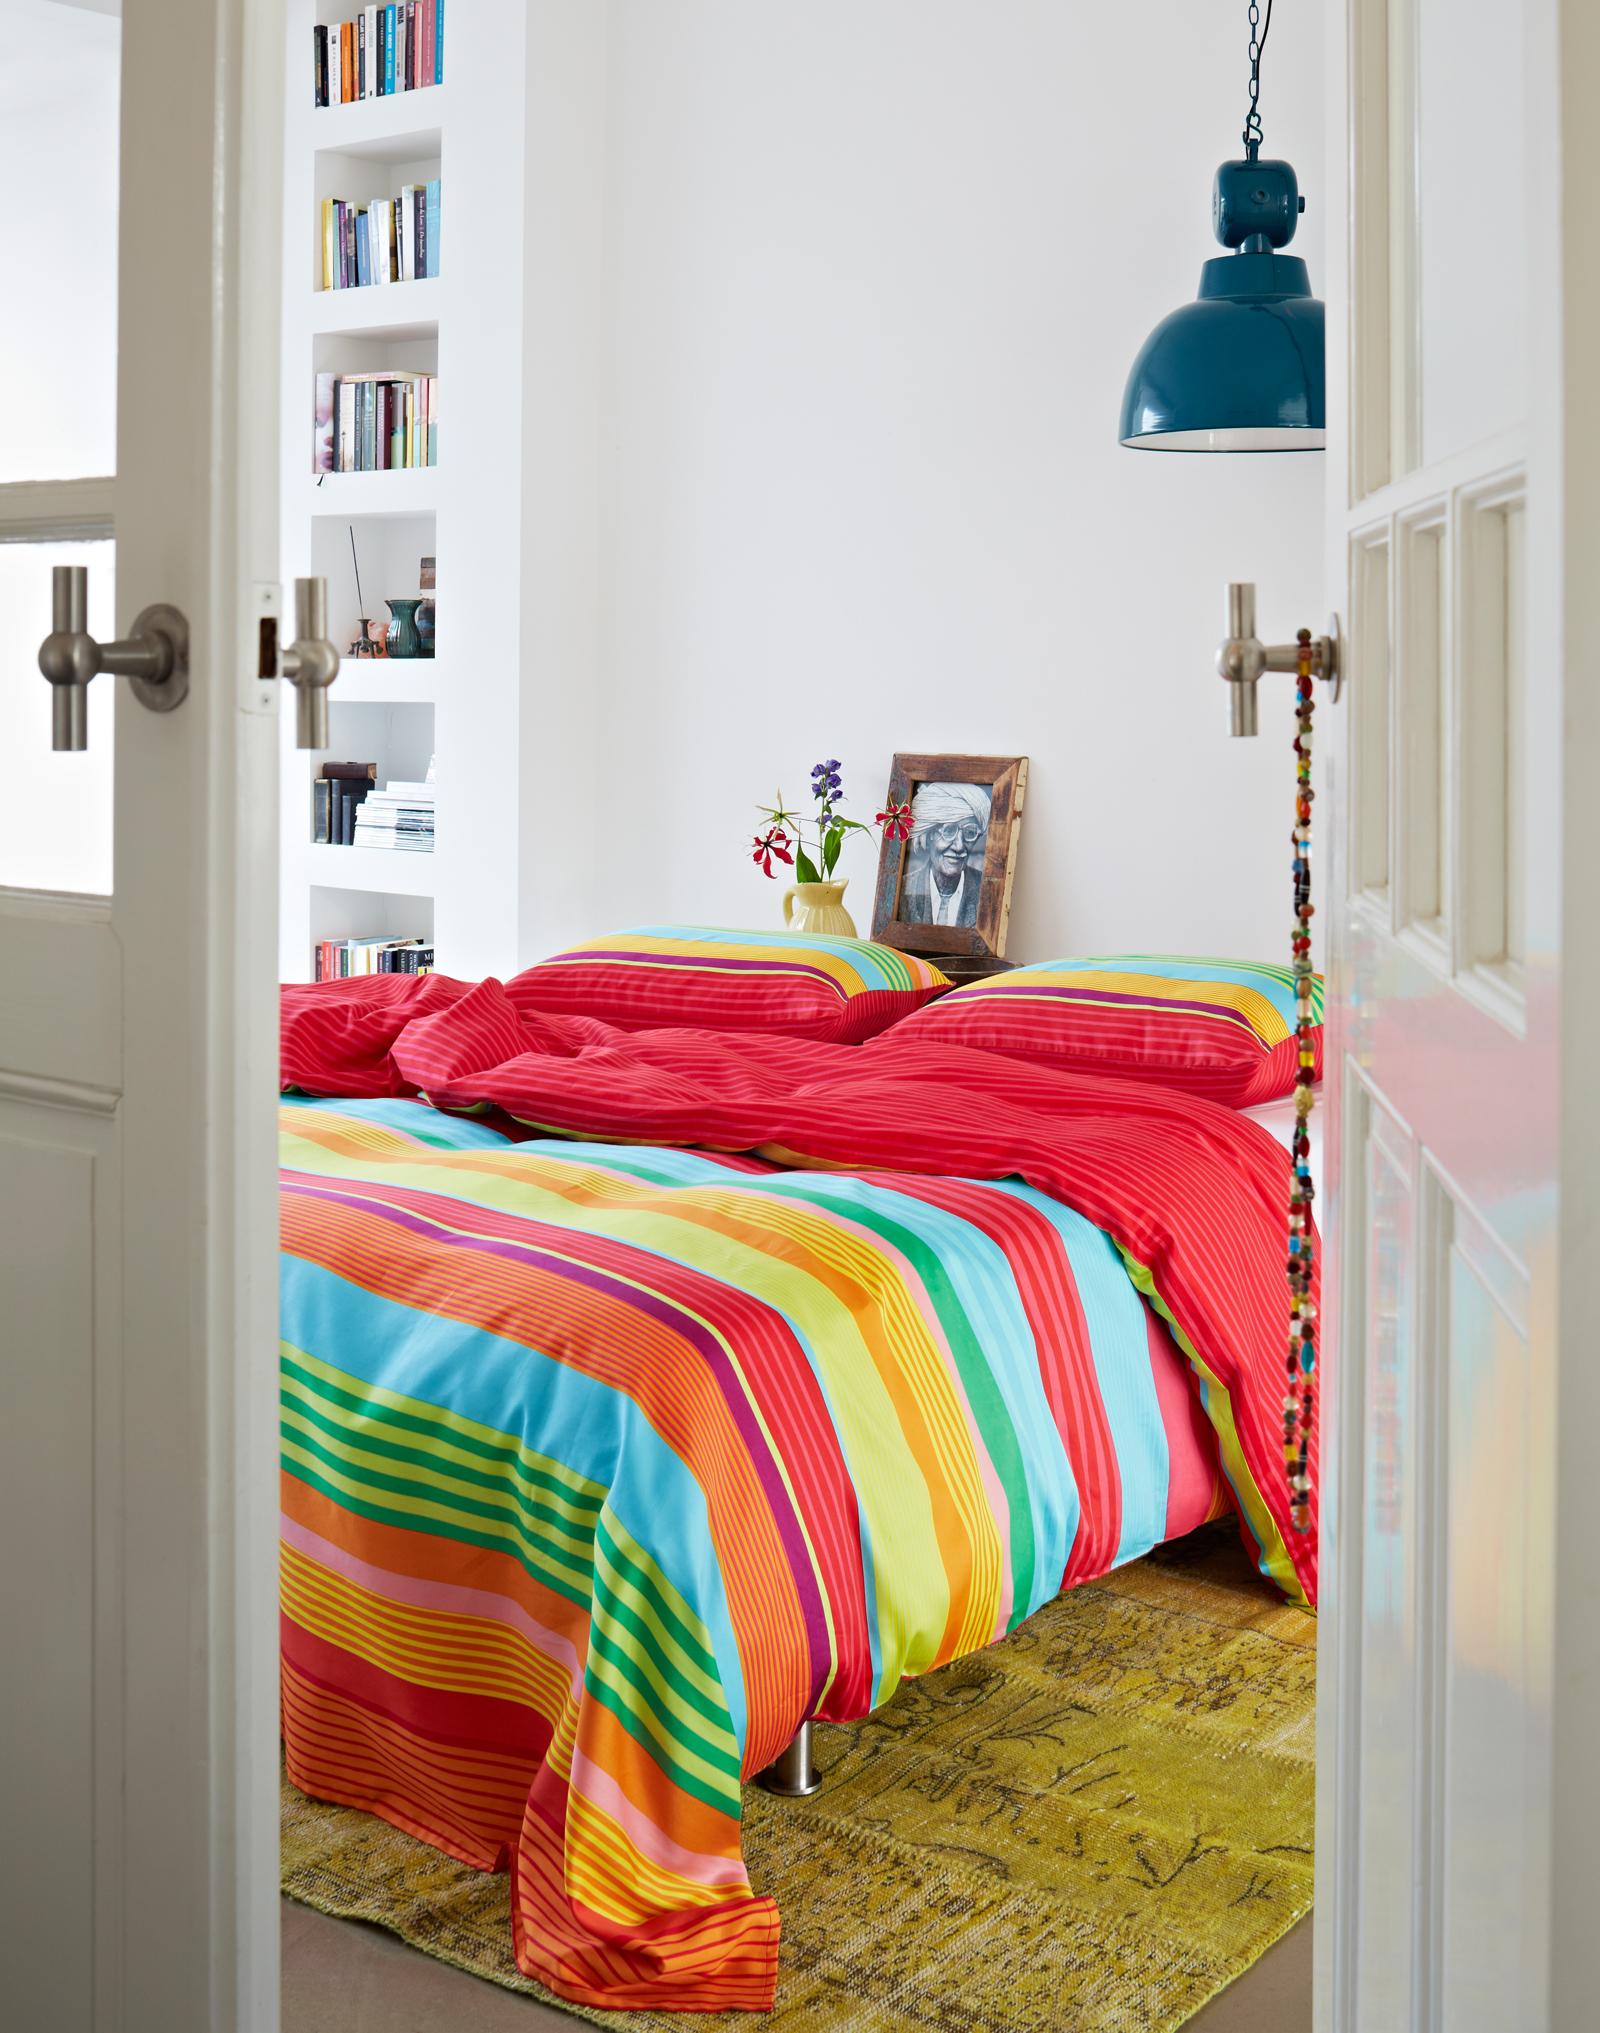 Bettwäsche als Dekoration einsetzen #wandregal #teppich #bettwäsche #buntebettwäsche ©Essenza Home/Covers & Co